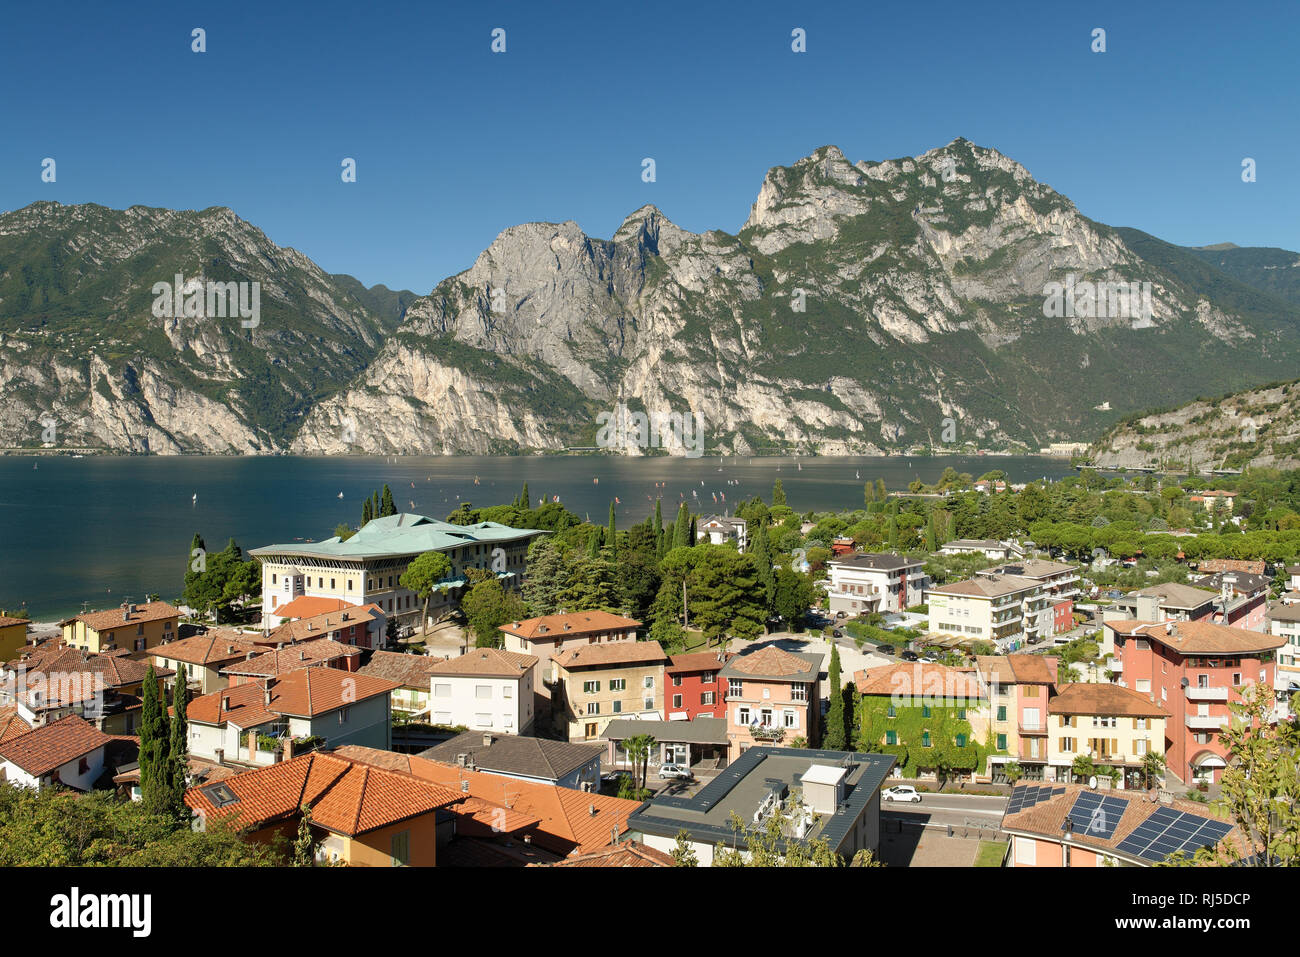 Blick vom Aussichtspunkt Belvedere auf Torbole und den Gardasee, Provinz Trient, Trentino-Alto Adige, Italien Foto Stock